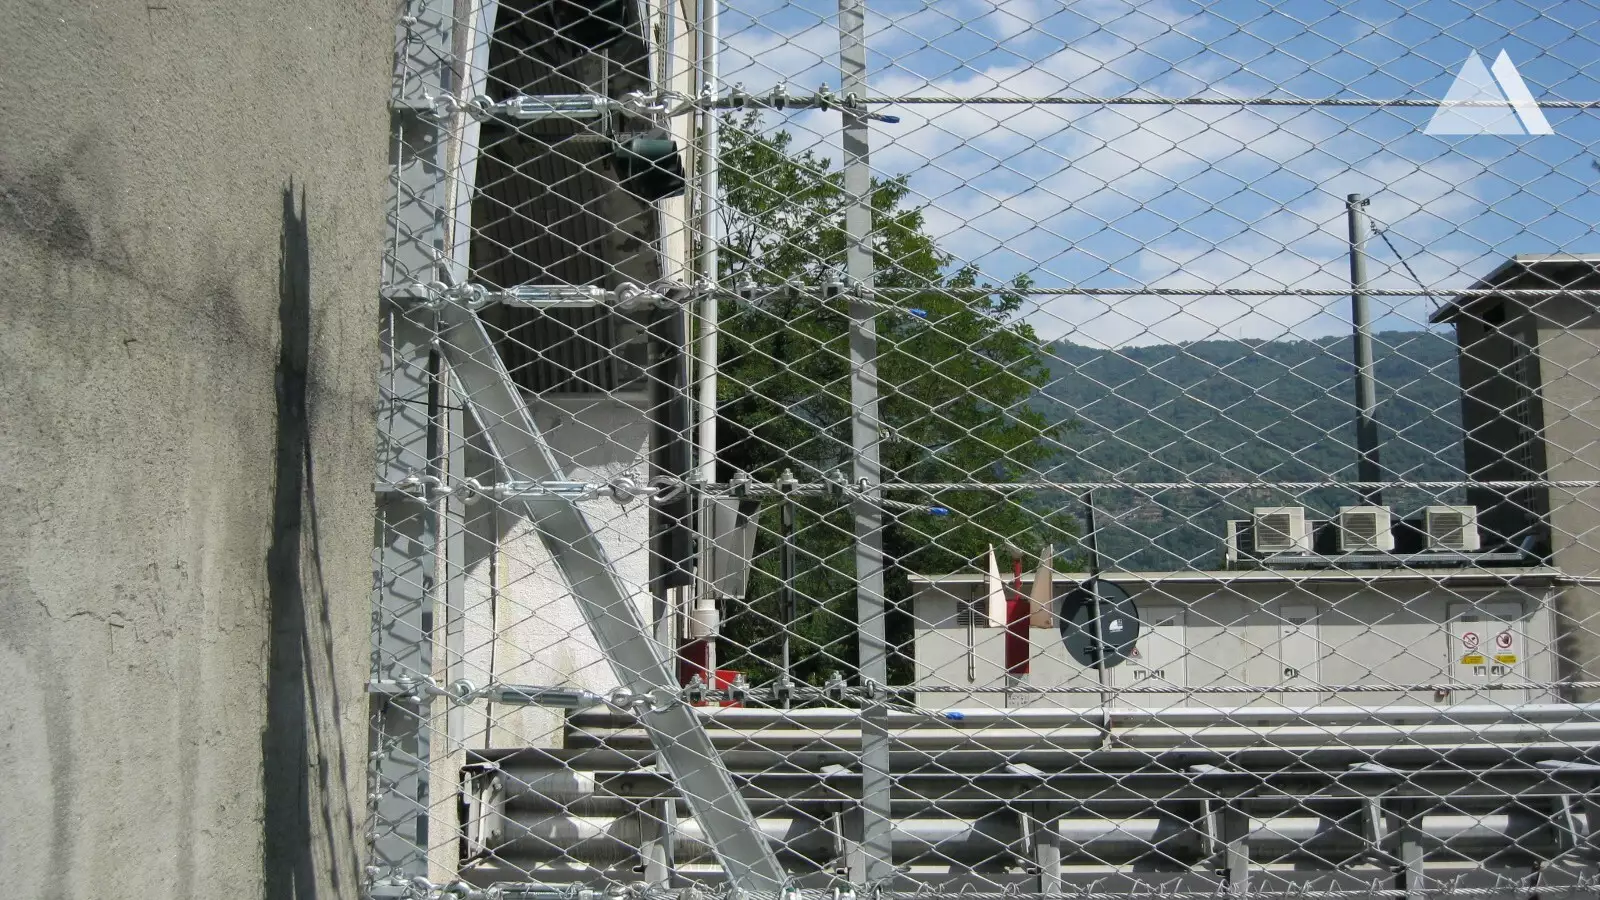 Protecţia la impact - ATIVA - Highway Turin Aosta, Quissolo 2016